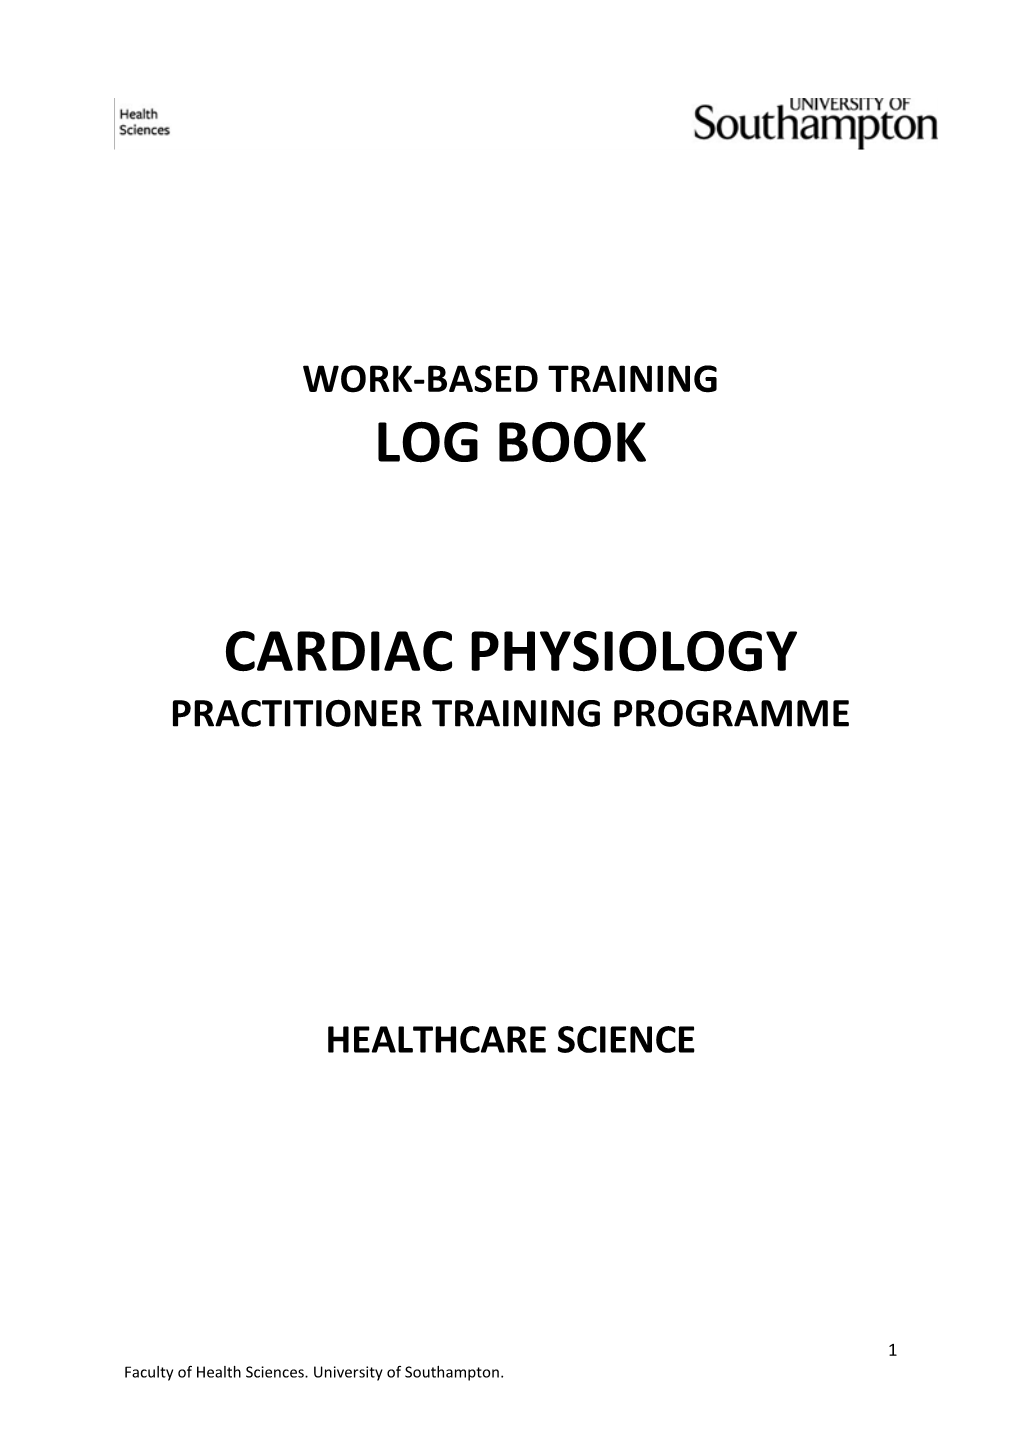 Log Book Cardiac Physiology